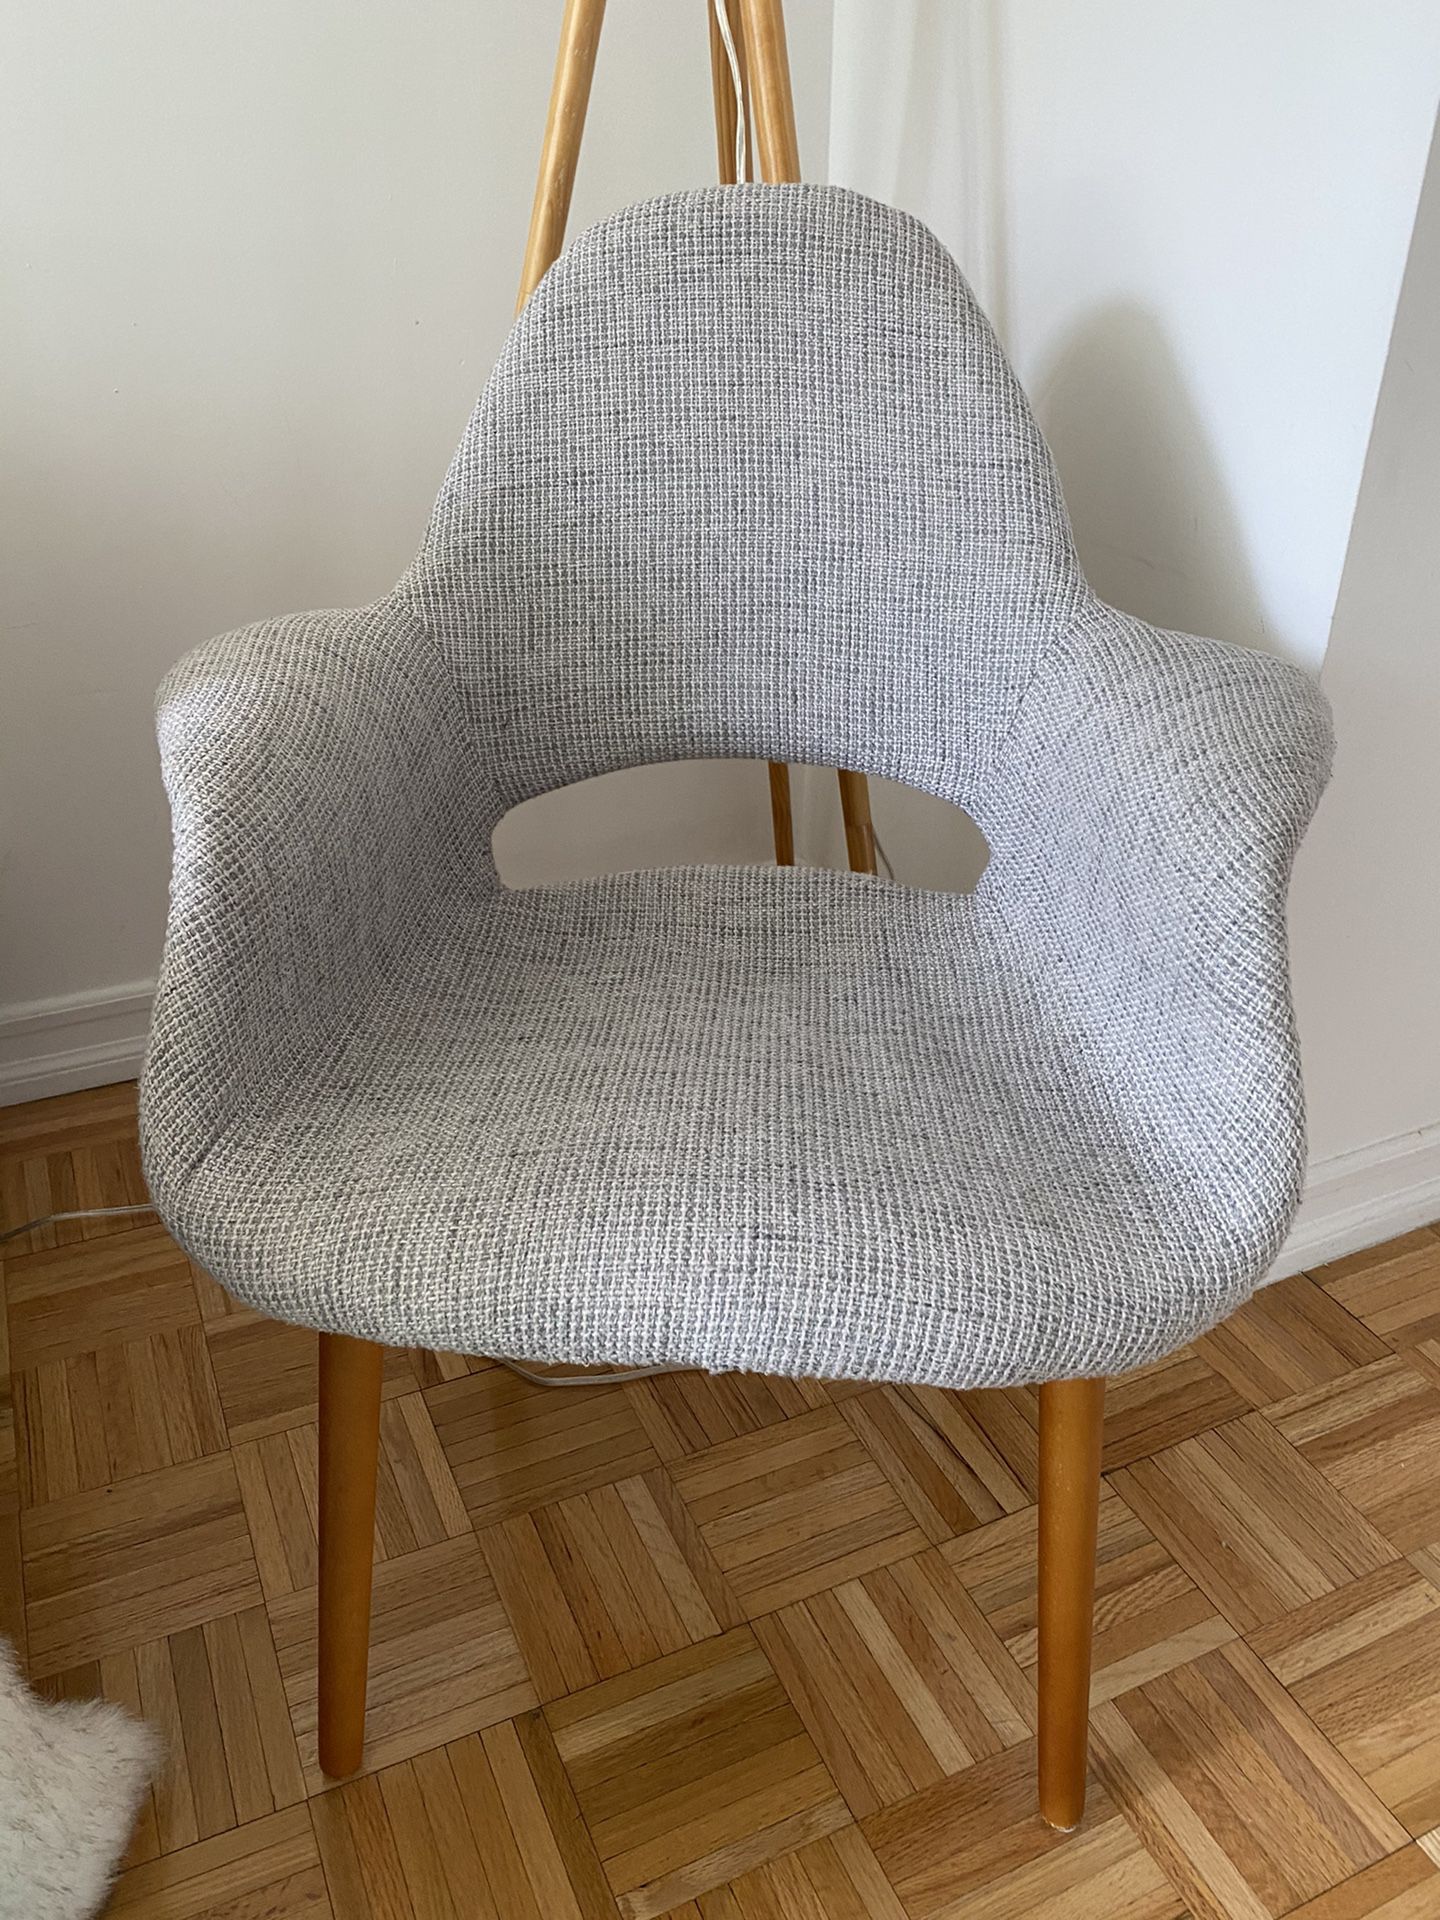 West elm chair (grey fabric + wood legs)